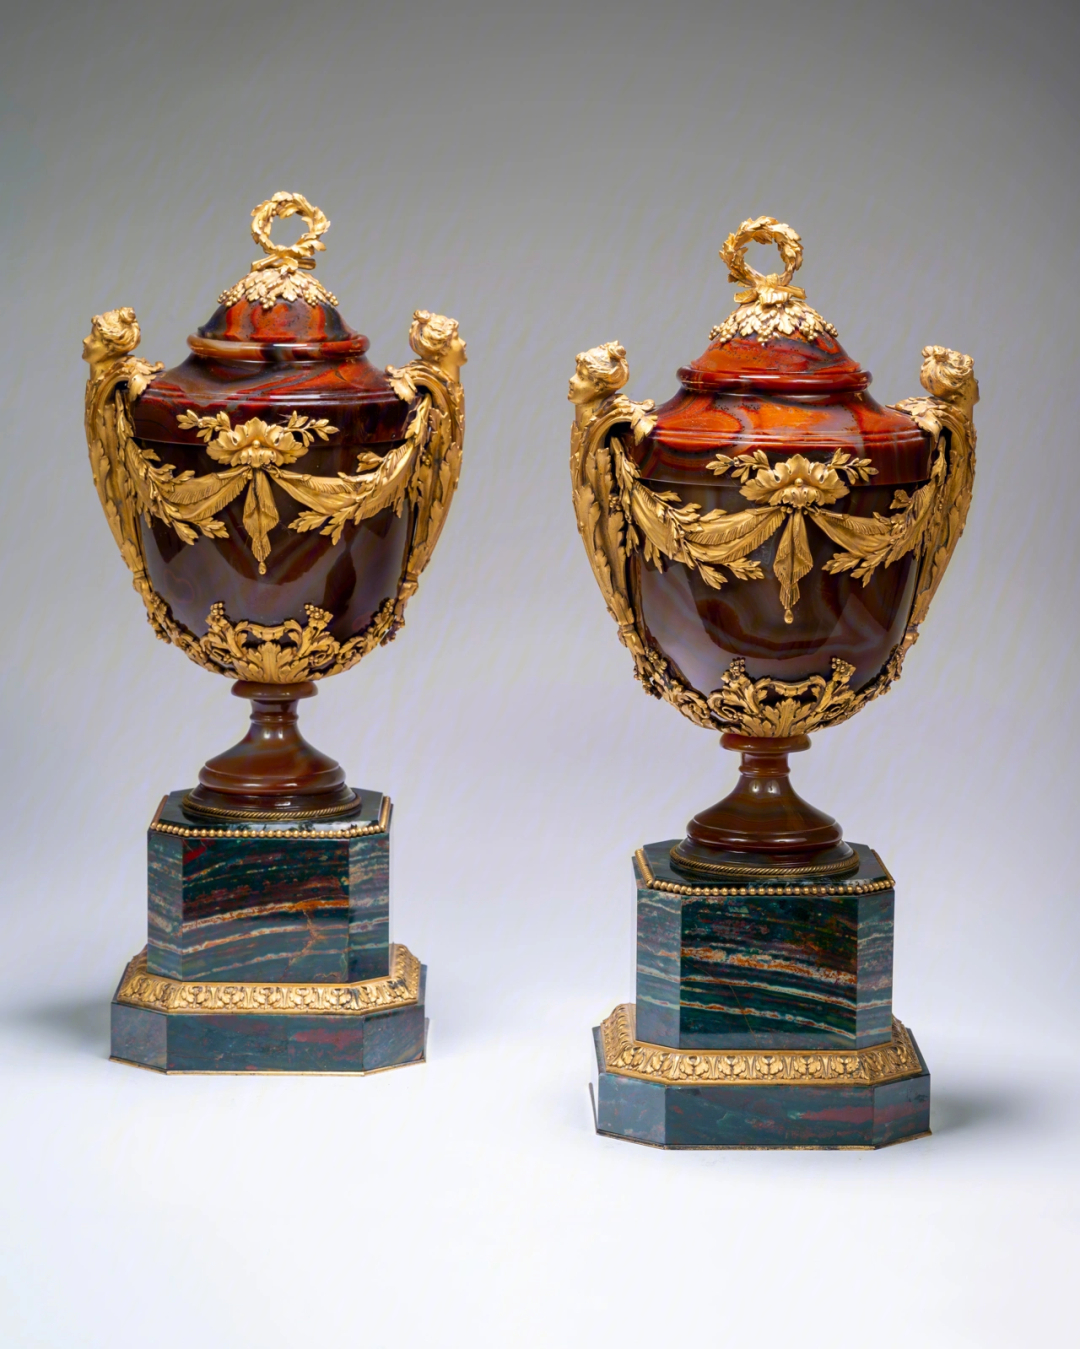 名贵美观的成对玛瑙花瓶,盖子和小台座亦为玛瑙材质.